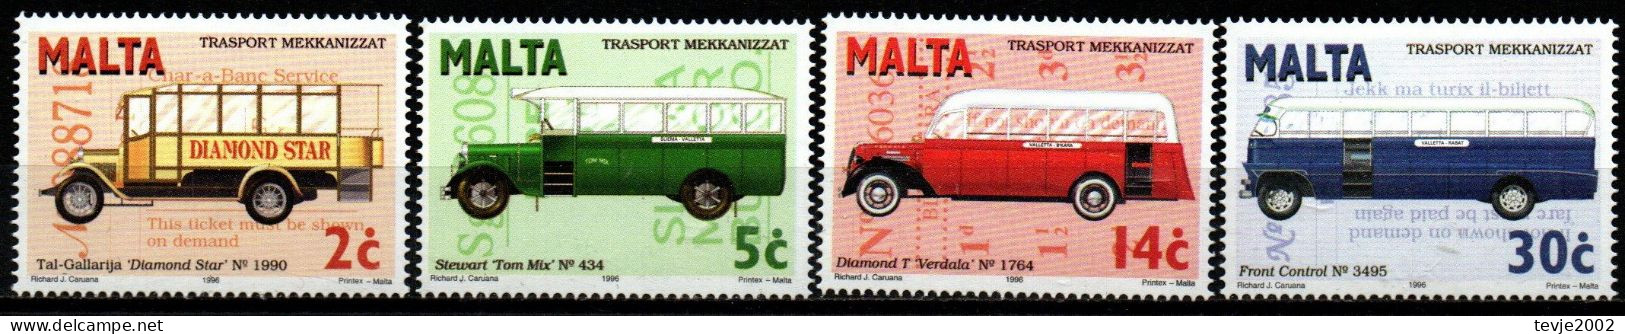 Malta 1996 - Mi.Nr. 997 - 1000 - Postfrisch MNH - Busse Buses - Bussen